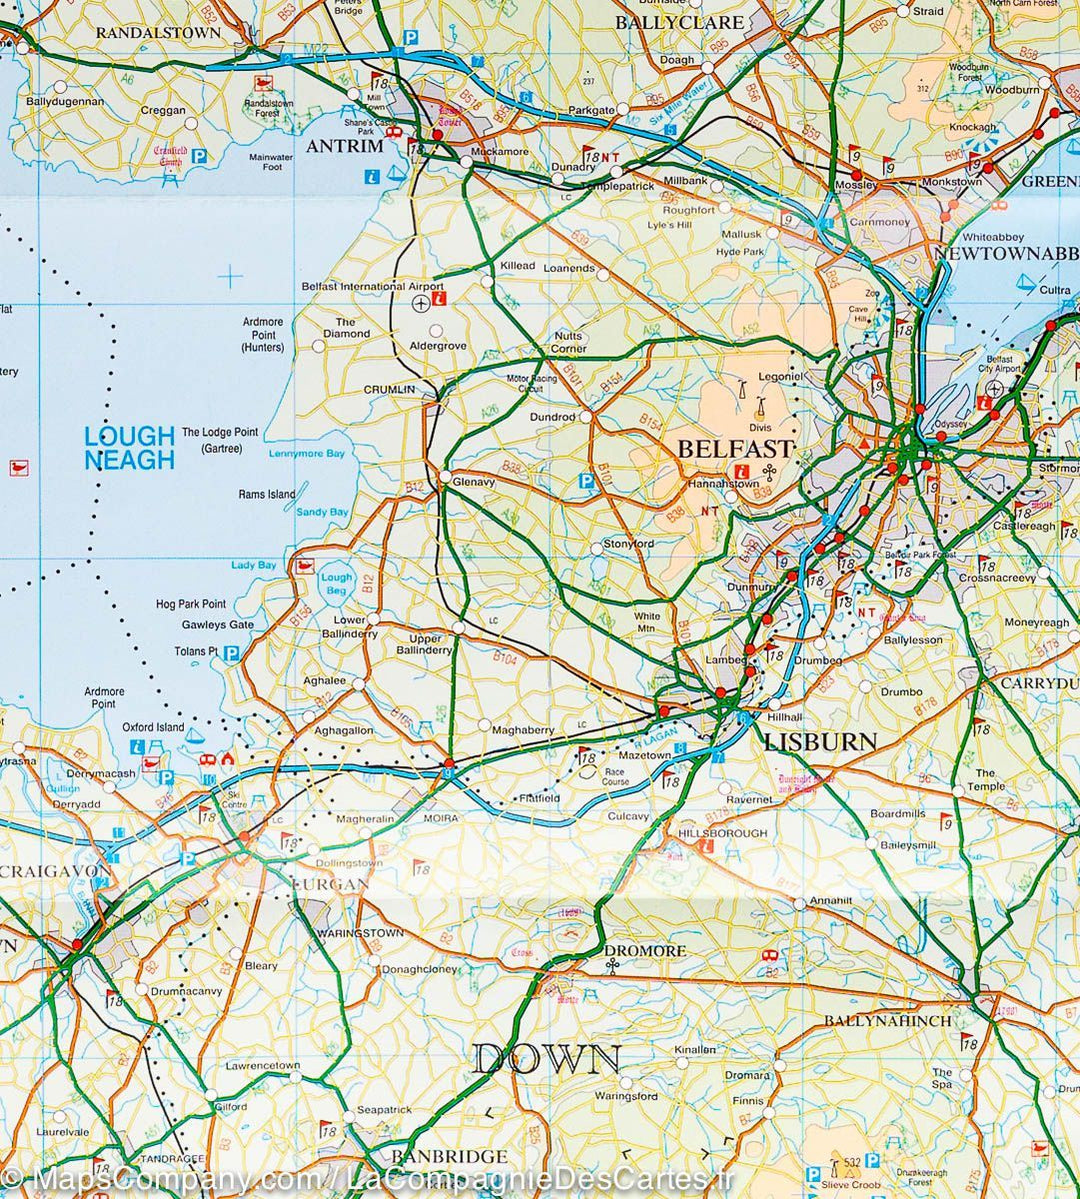 Carte touristique - Irlande Nord | Ordnance Survey carte pliée Ordnance Survey 